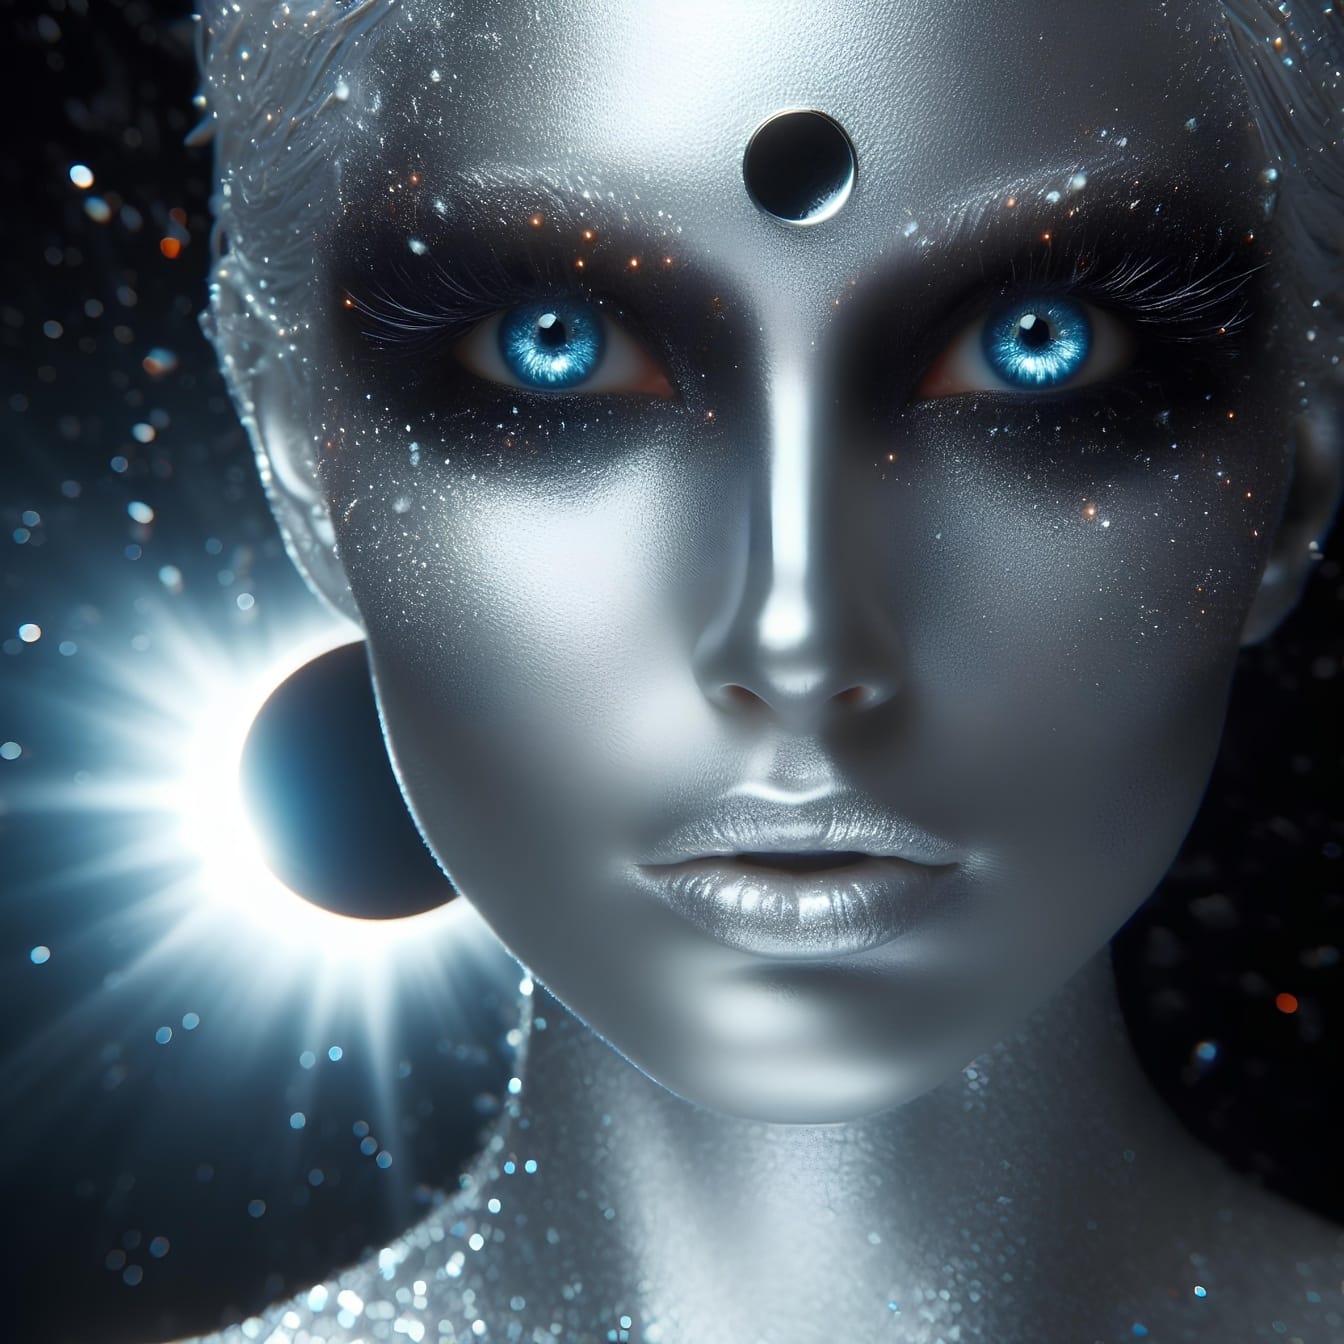 Grafiikka fantasianaisesta, jolla on hopeanvärinen iho ja siniset silmät ja joka kuvaa kvanttihypnoosia